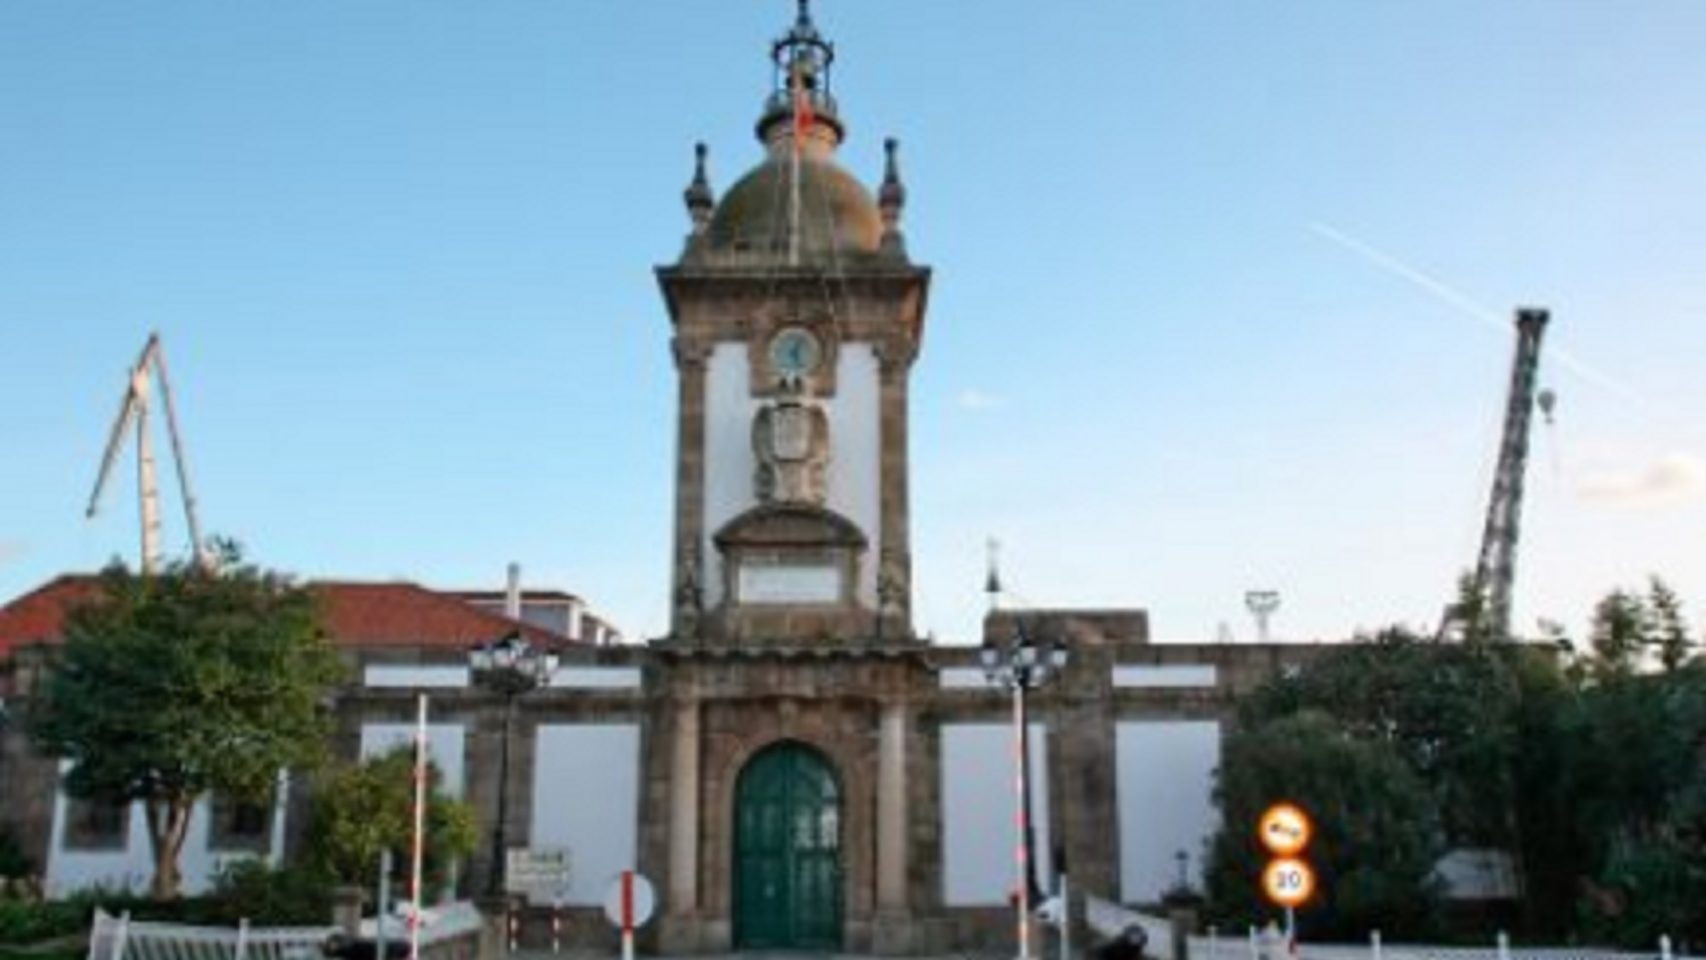 Puerta del dique del Arsenal Militar de Ferrol